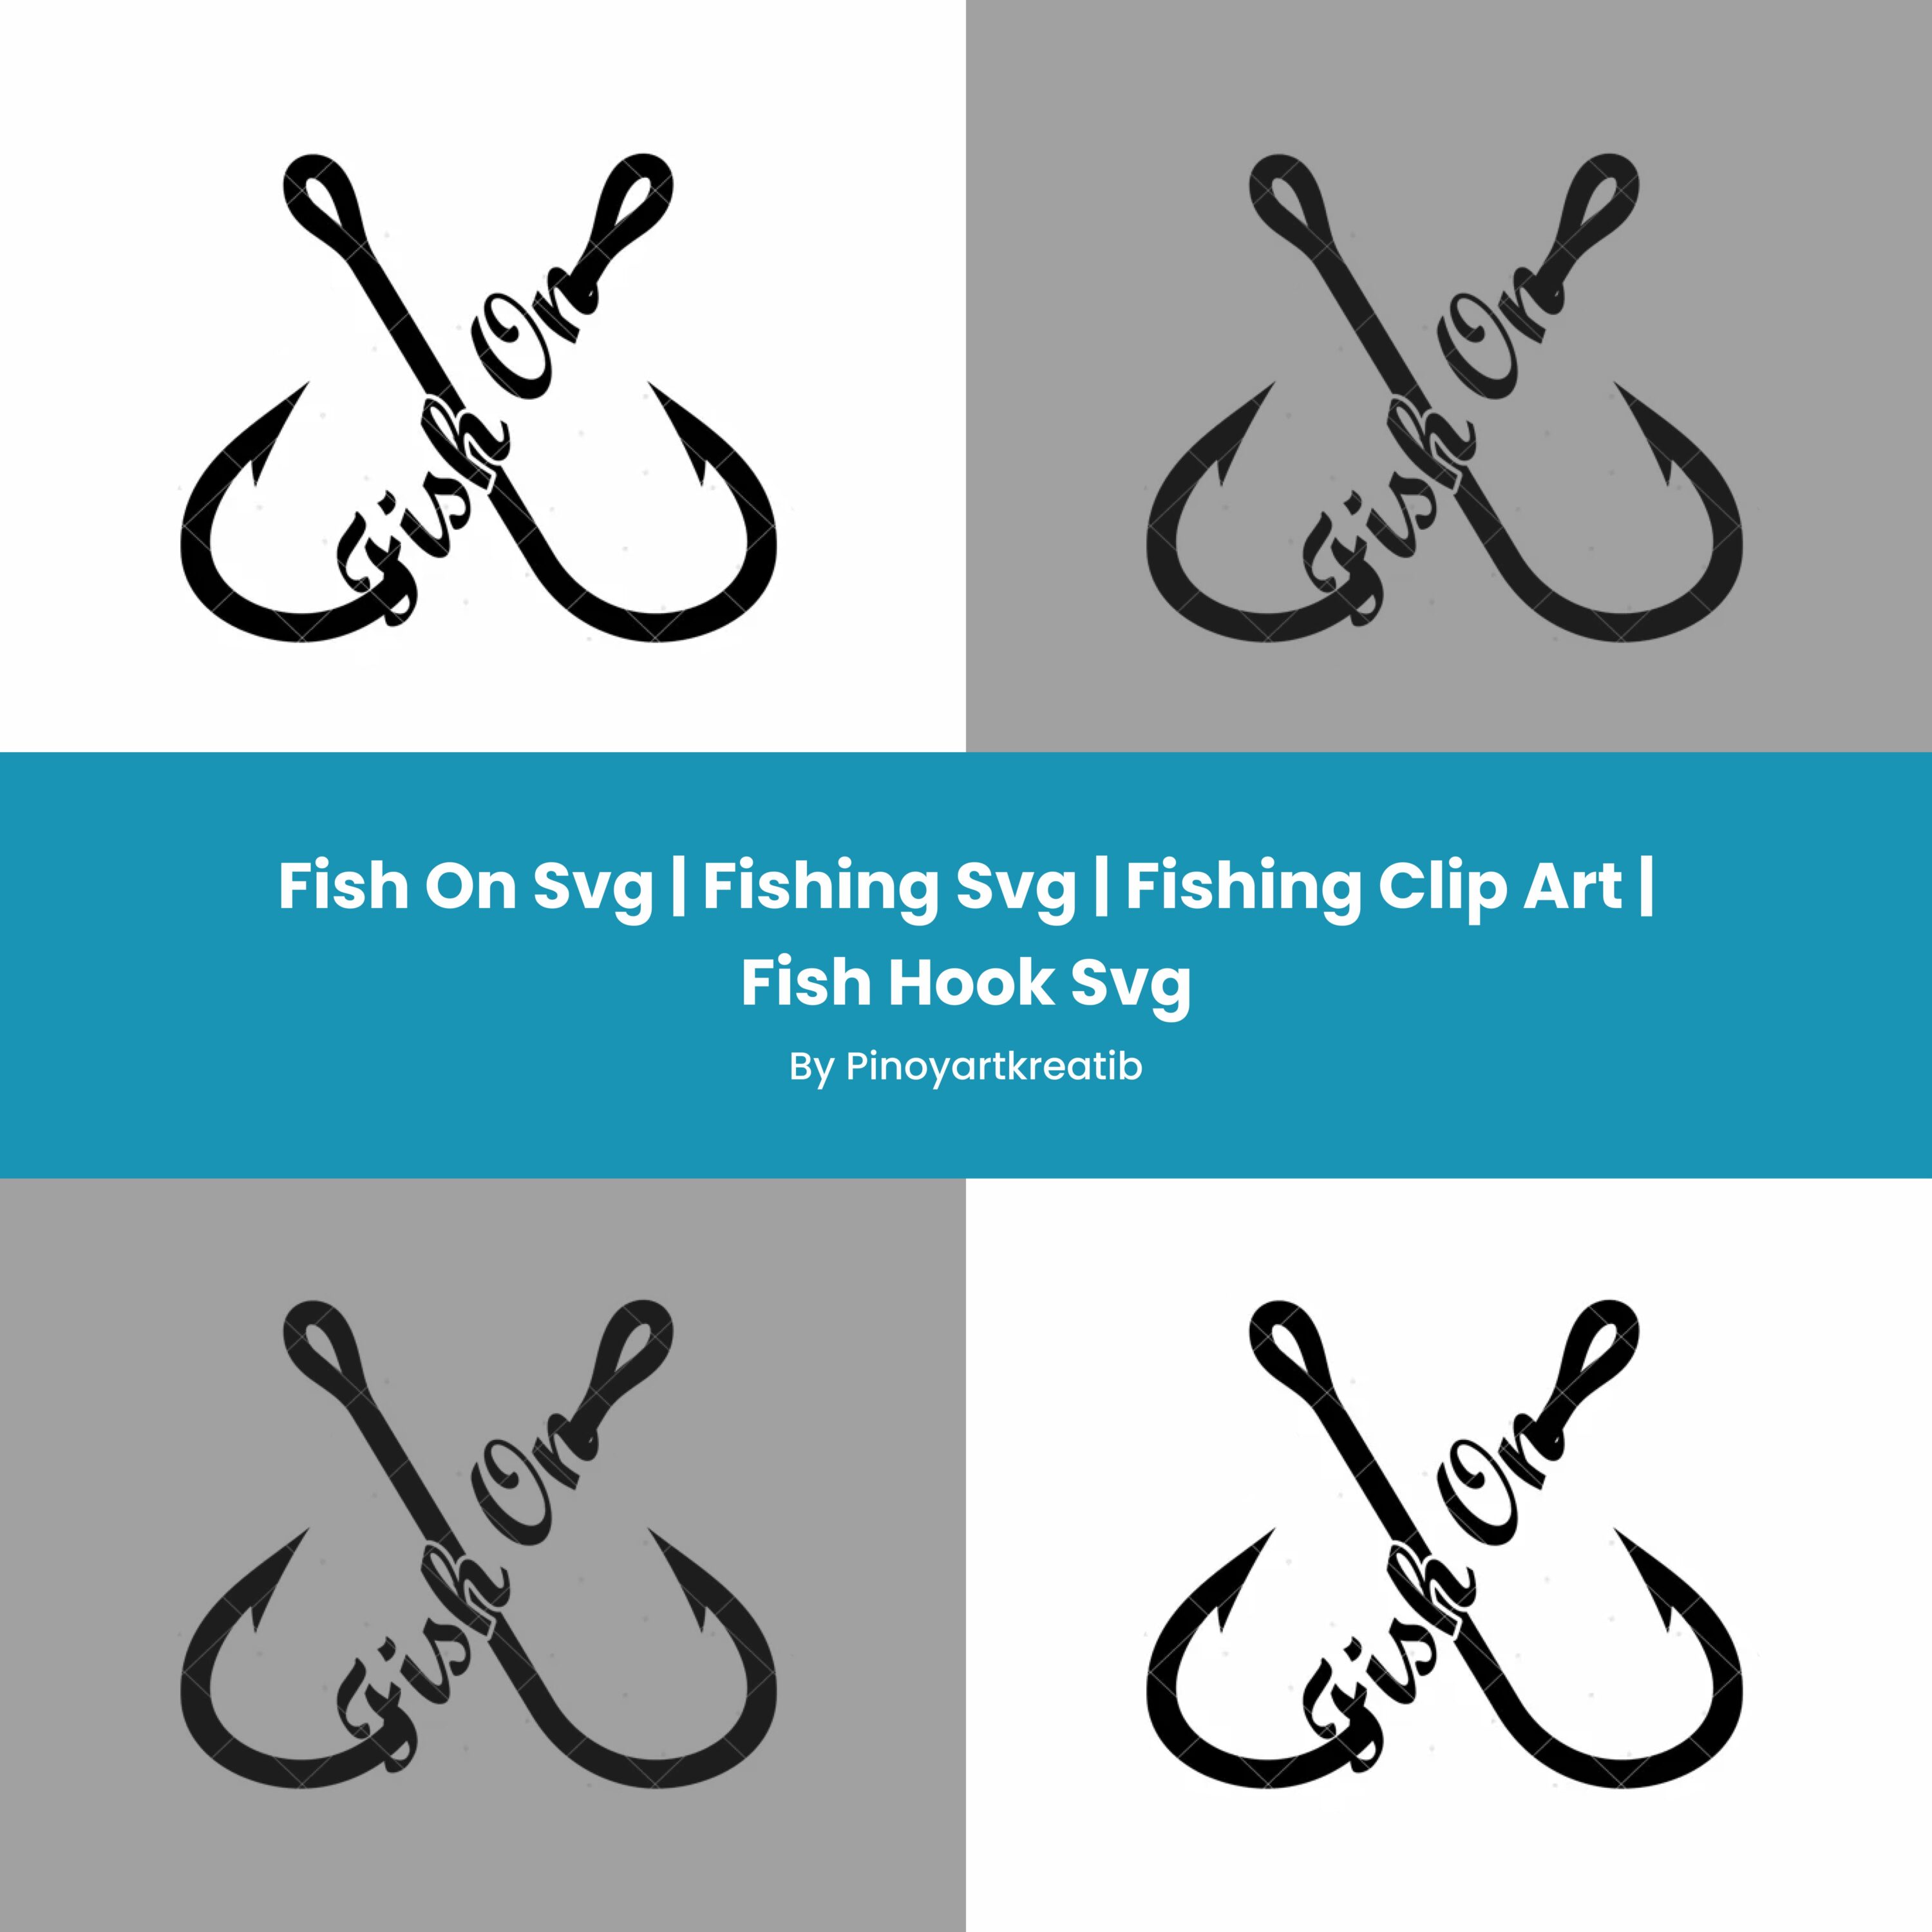 Fish On Svg | Fishing Svg | Fishing Clip Art | Fish Hook Svg.